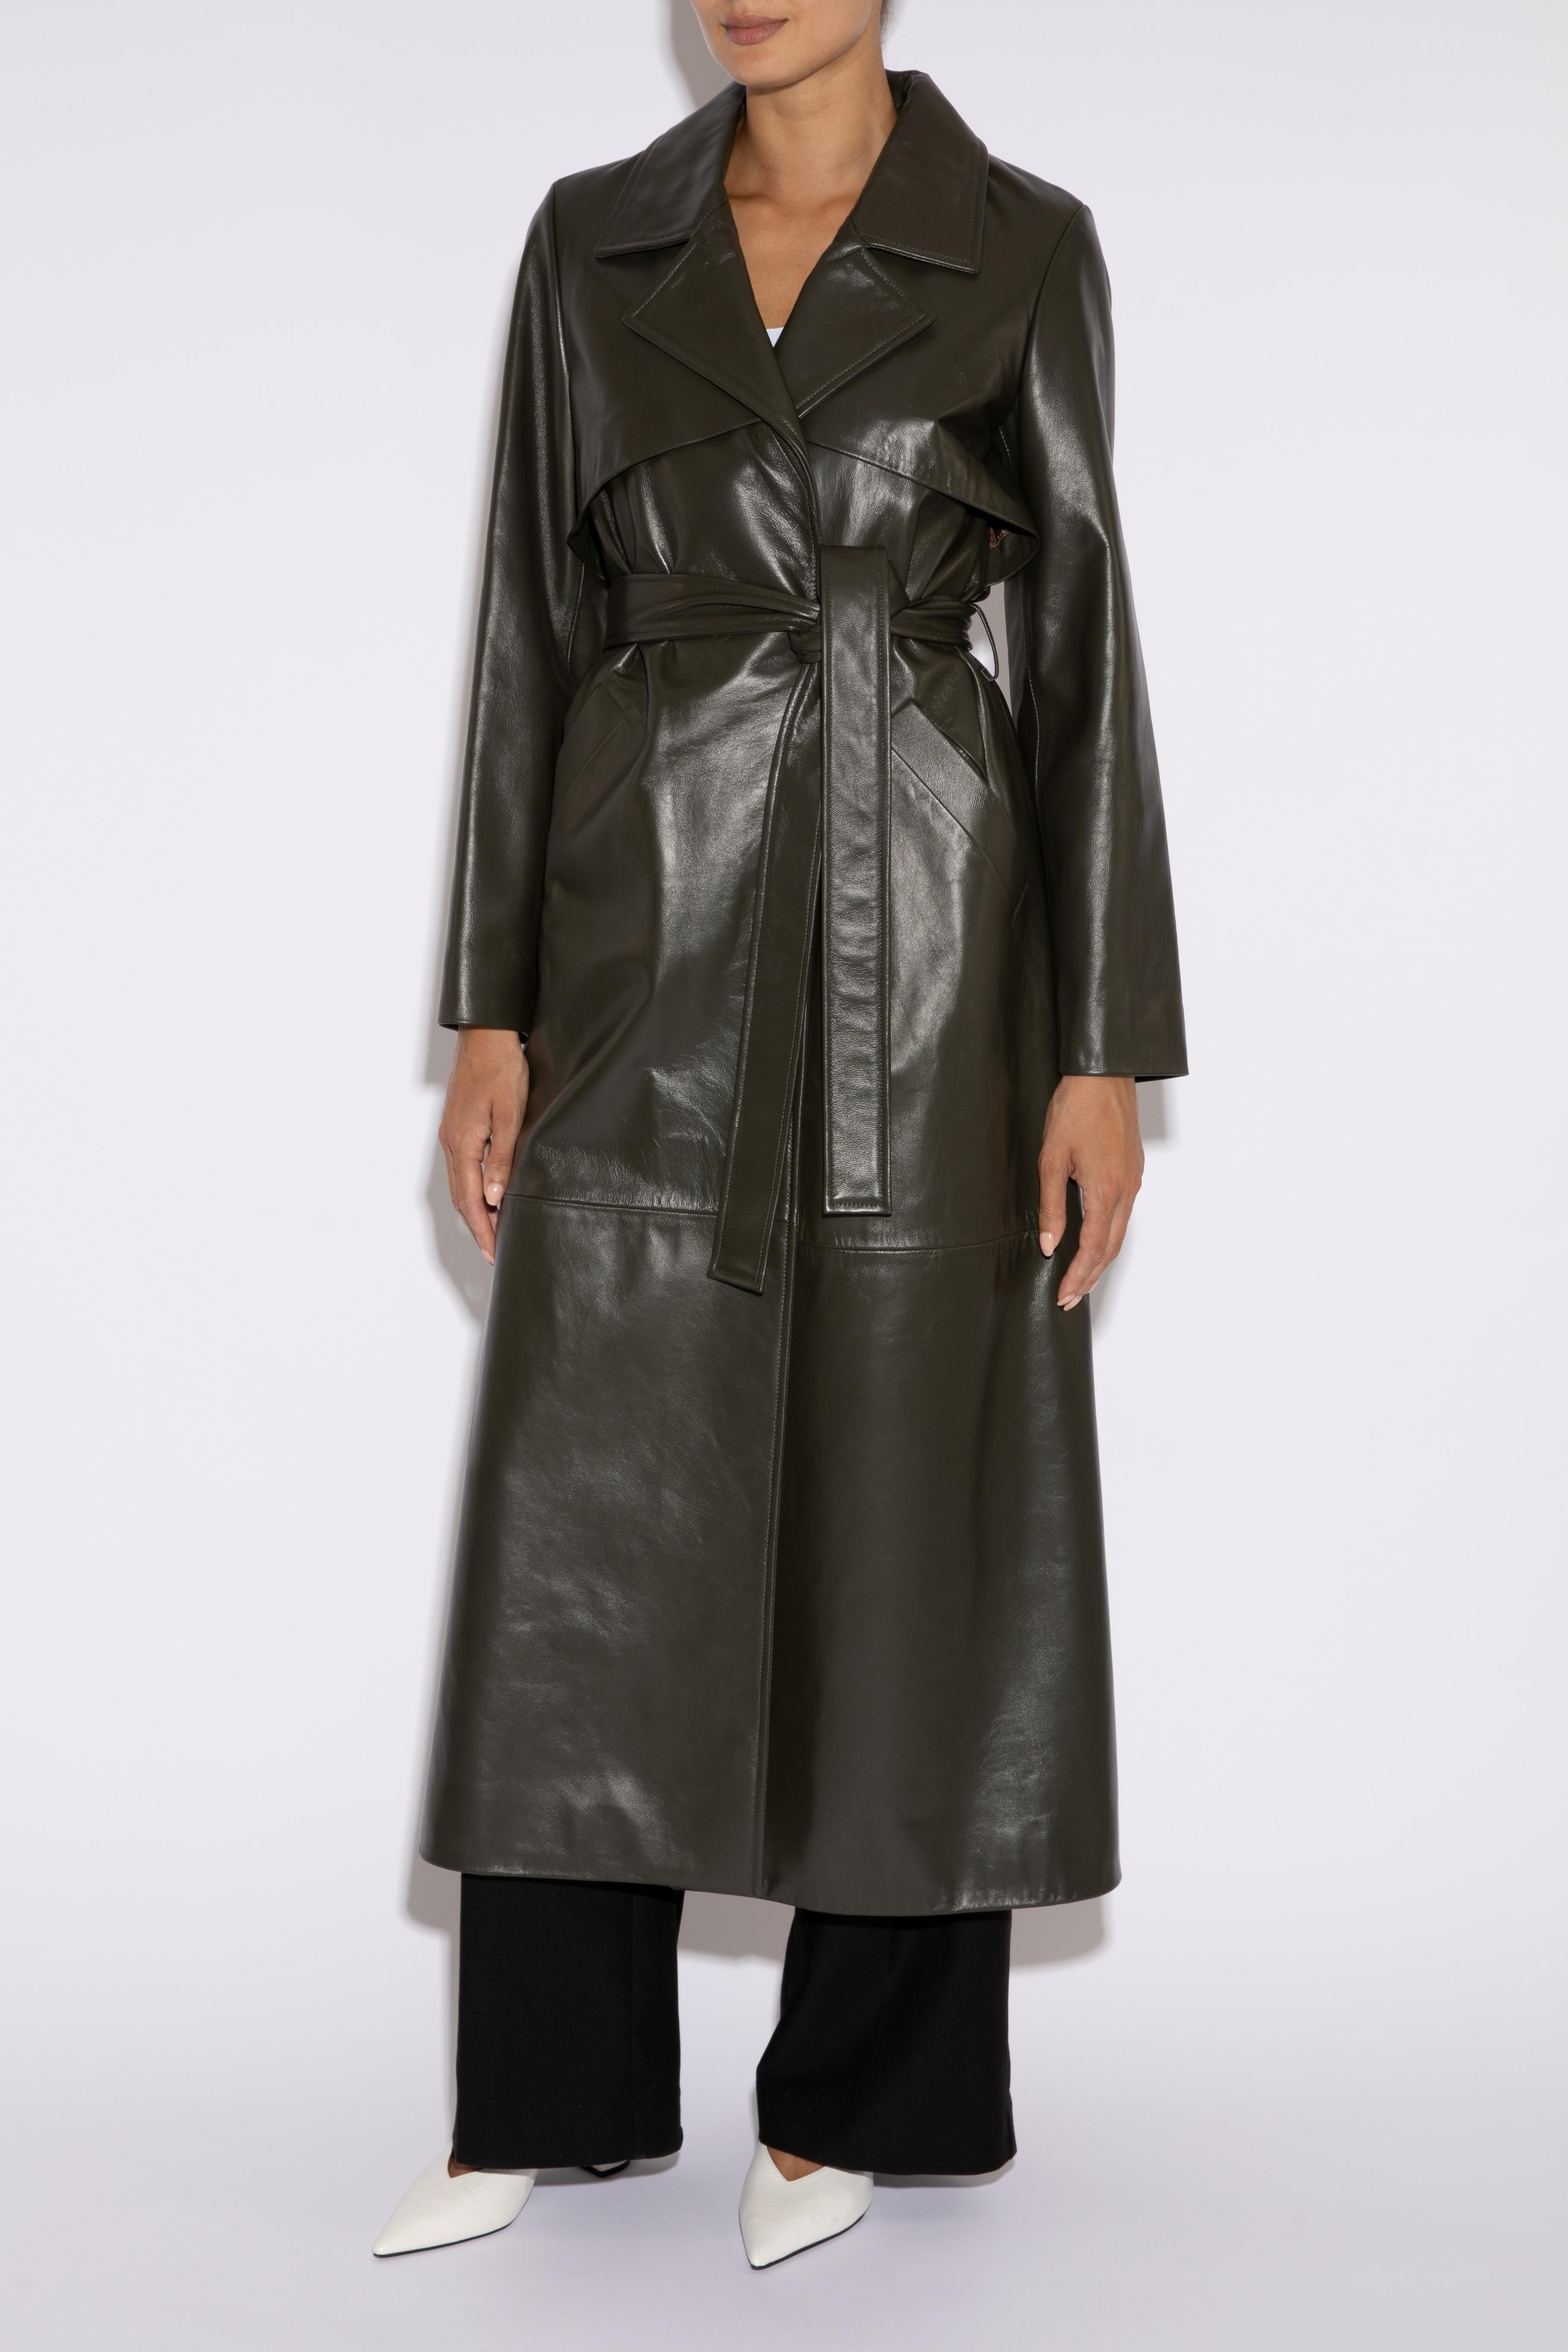 Verheyen Londoner Leder-Trenchcoat in dunklem Khakigrün - Größe Uk 12 Damen im Angebot